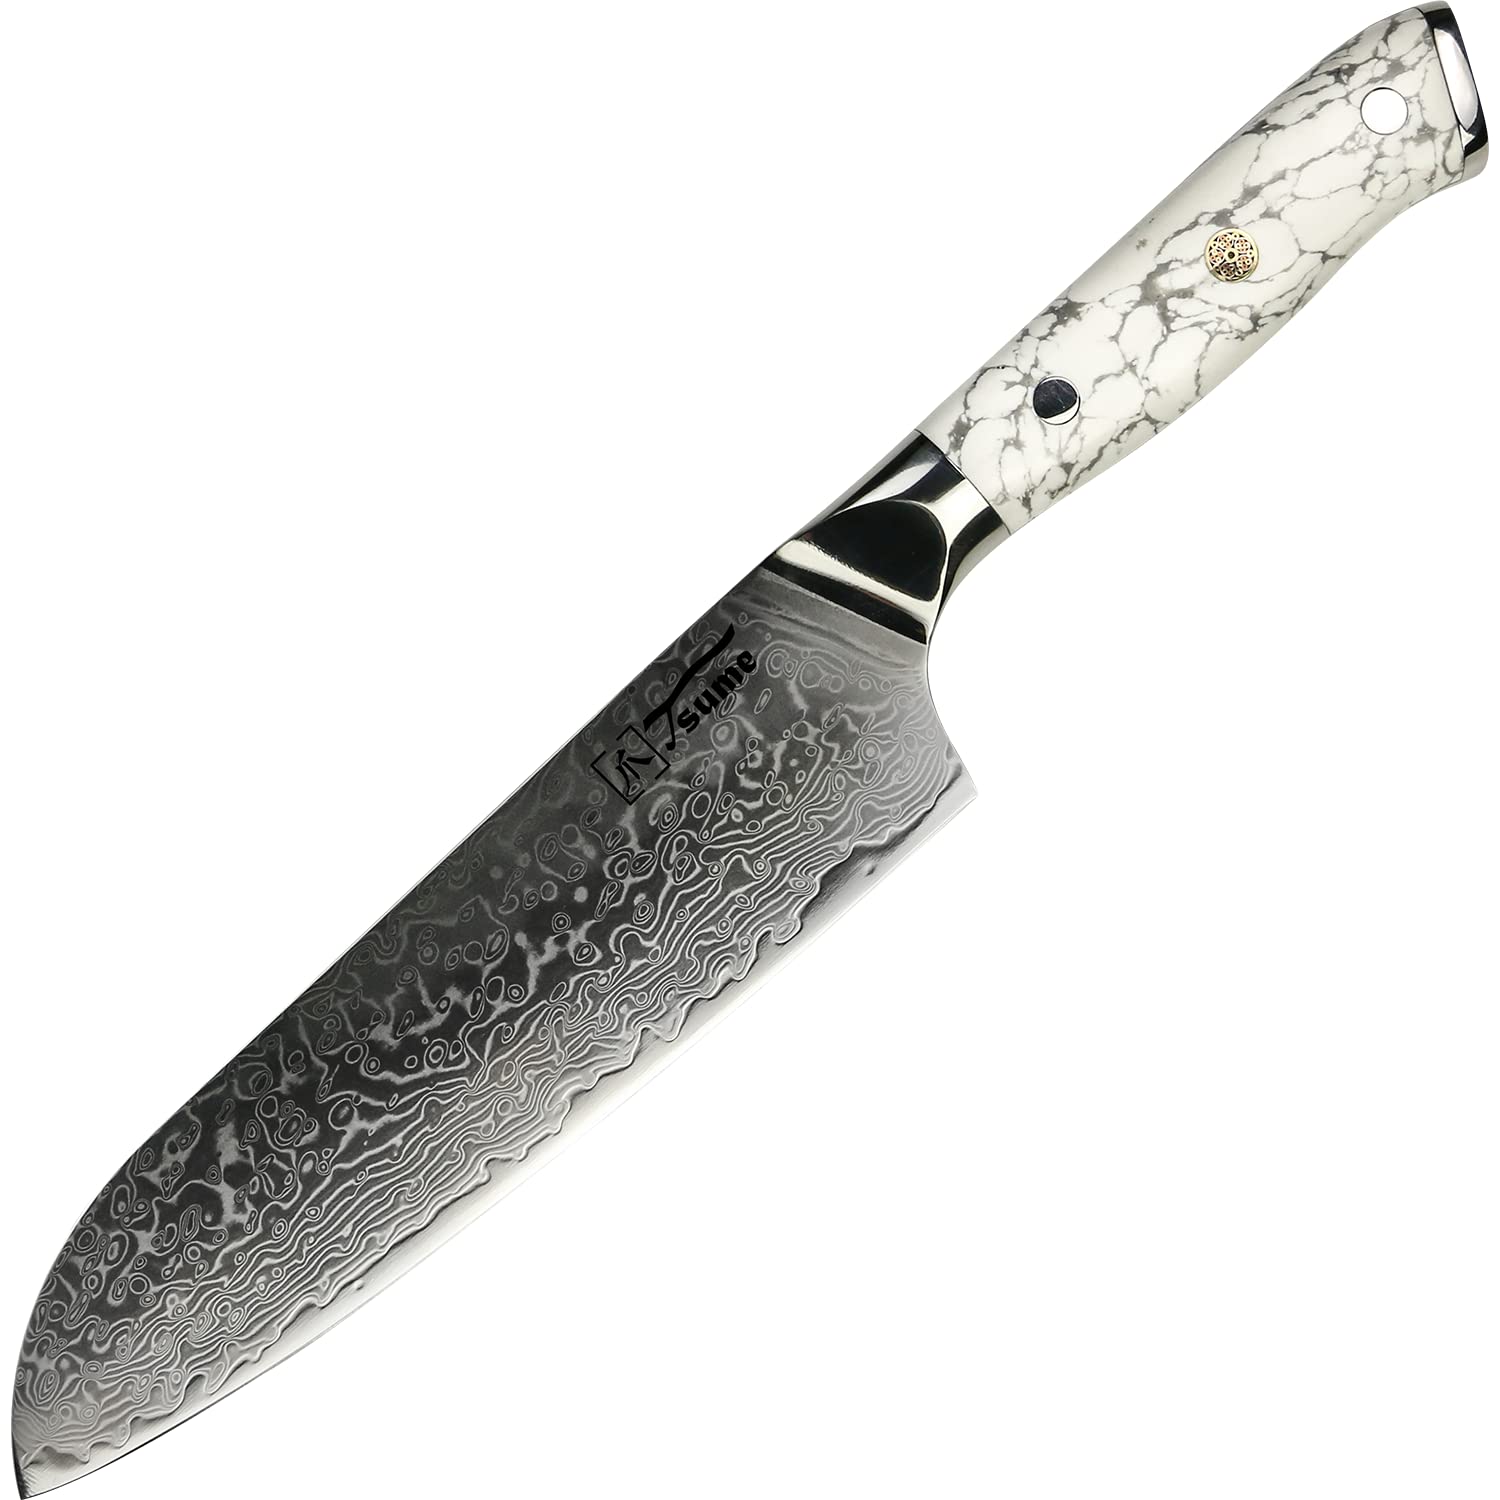 Tsume Santoku Messer White Marble, Klingenlänge 22cm, Echtes Damast Küchenmesser, 67 Schichten VG10 Edelstahlkern mit einzigartigem White Marble Handgriff, Rasiermesserscharf